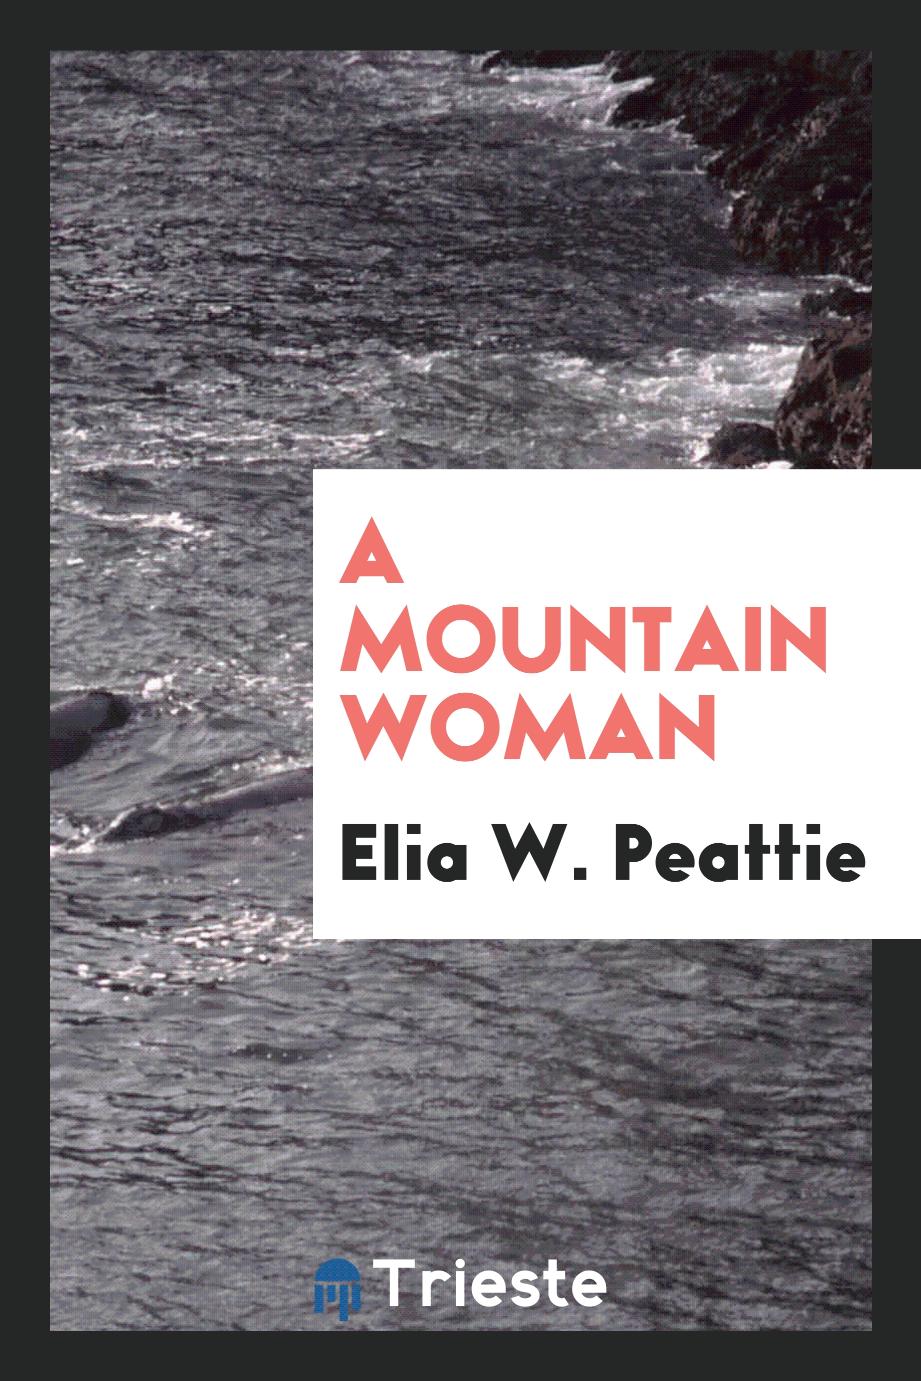 A mountain woman